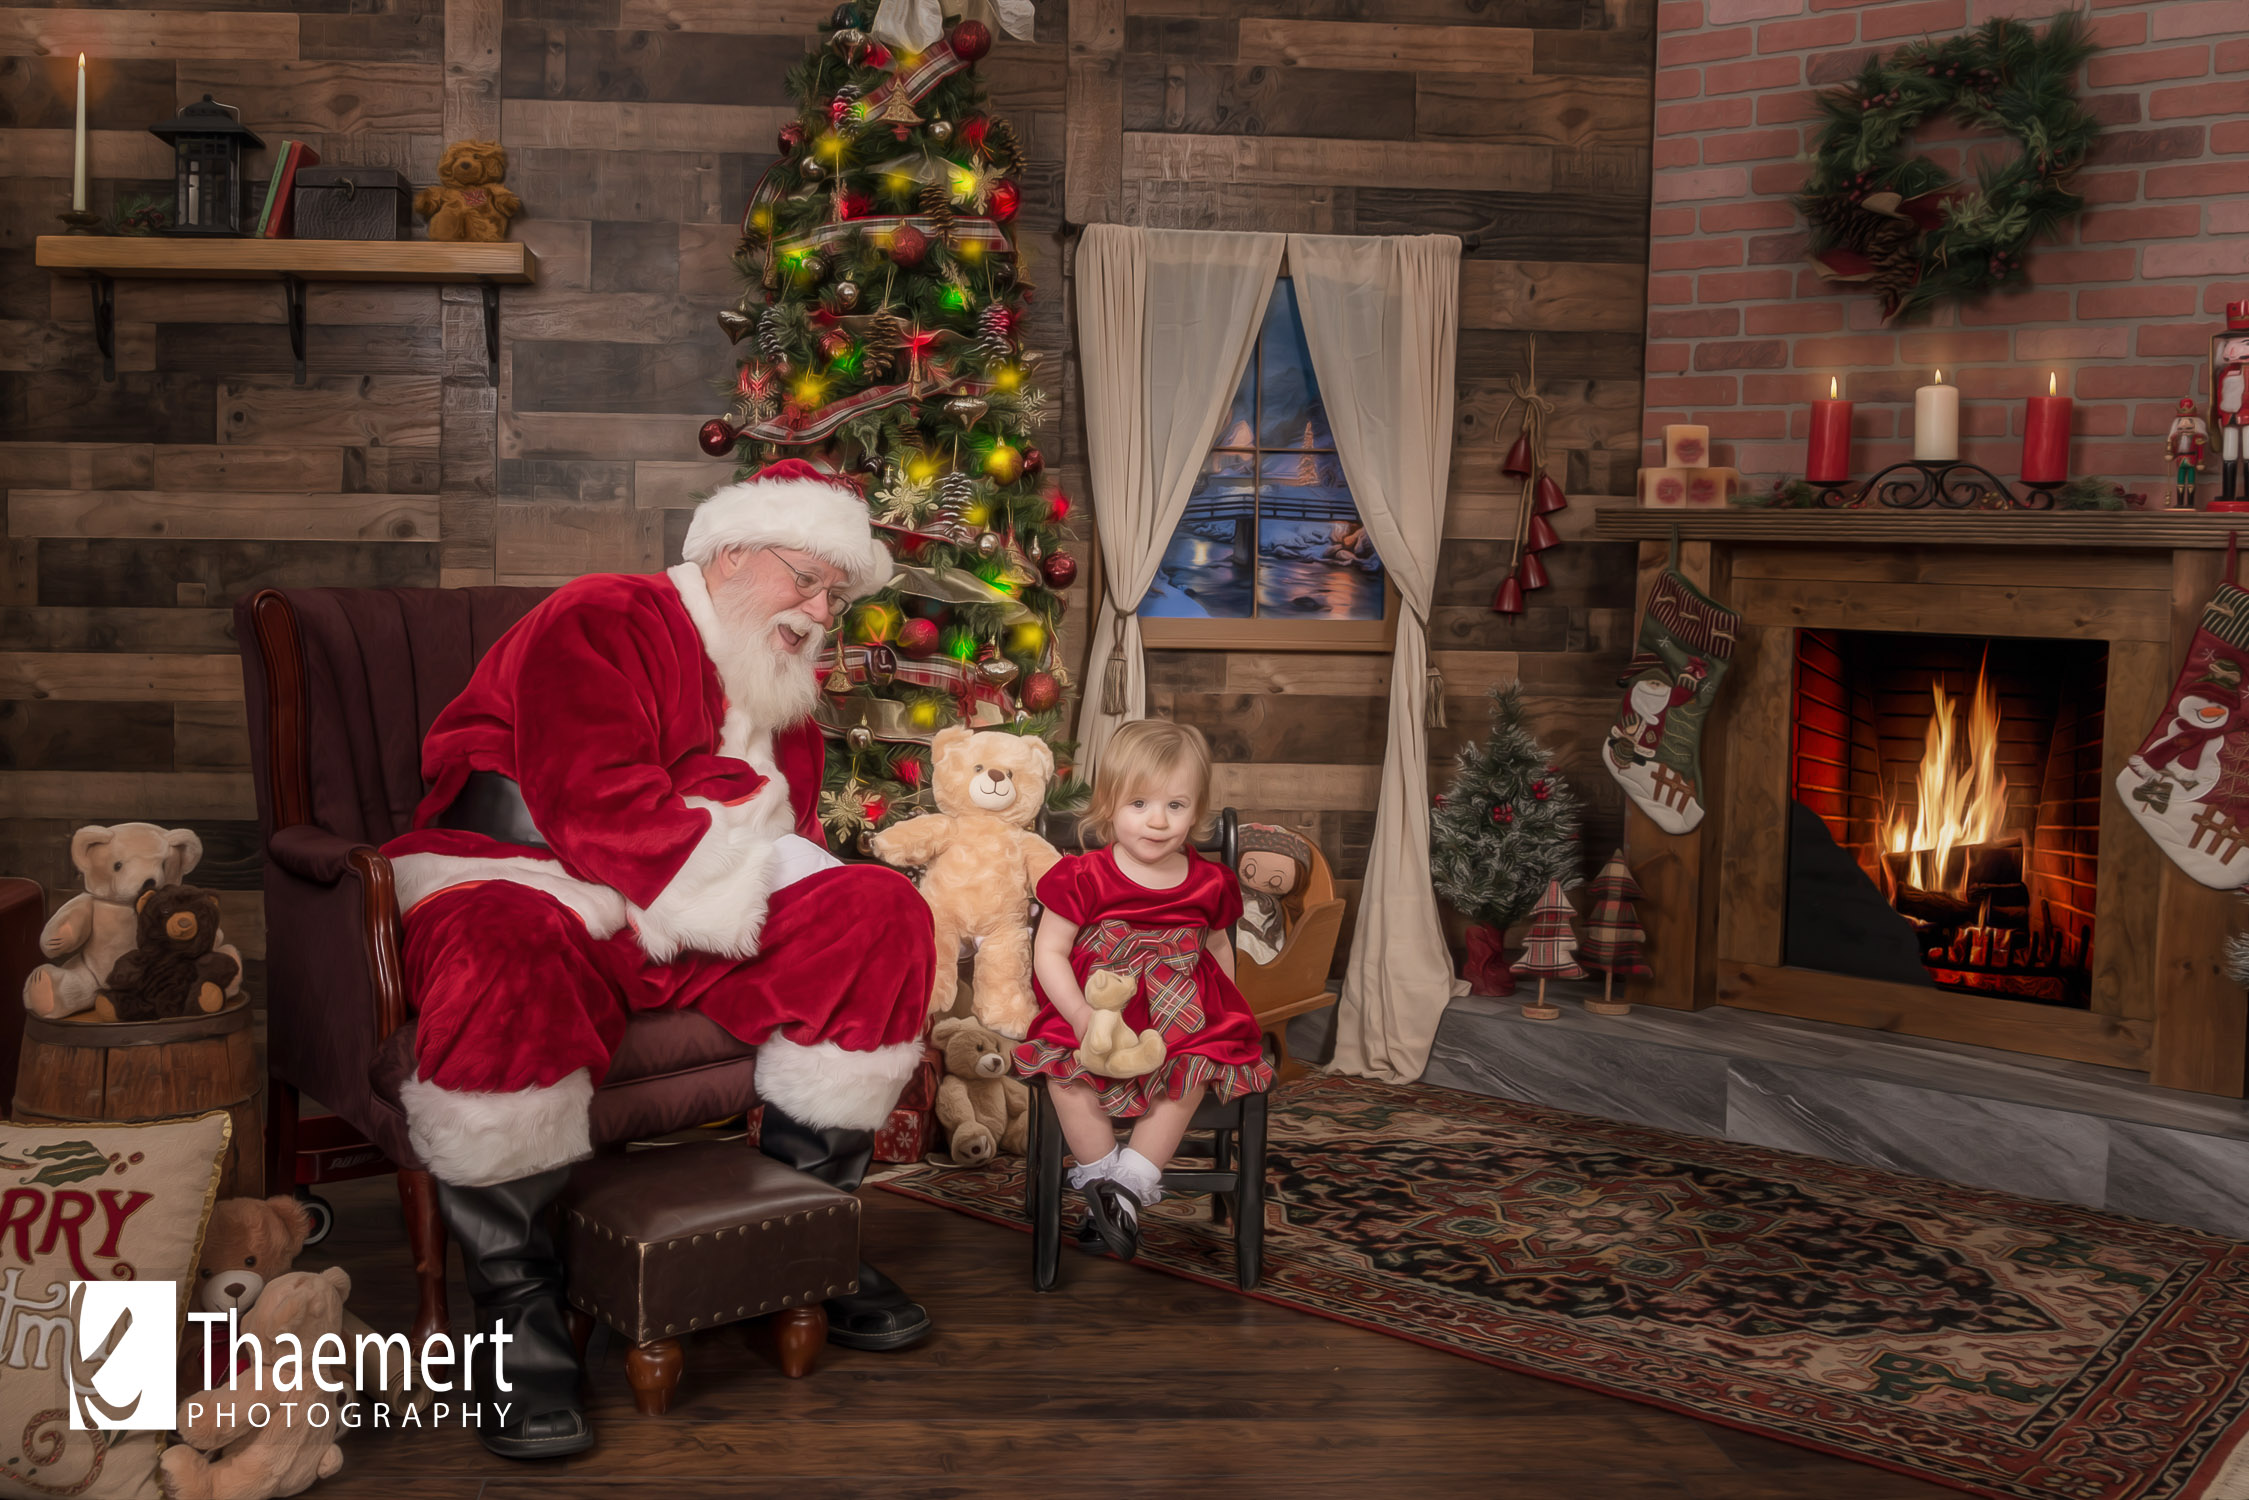 Santa and his Teddy Bear visit a toddler girl